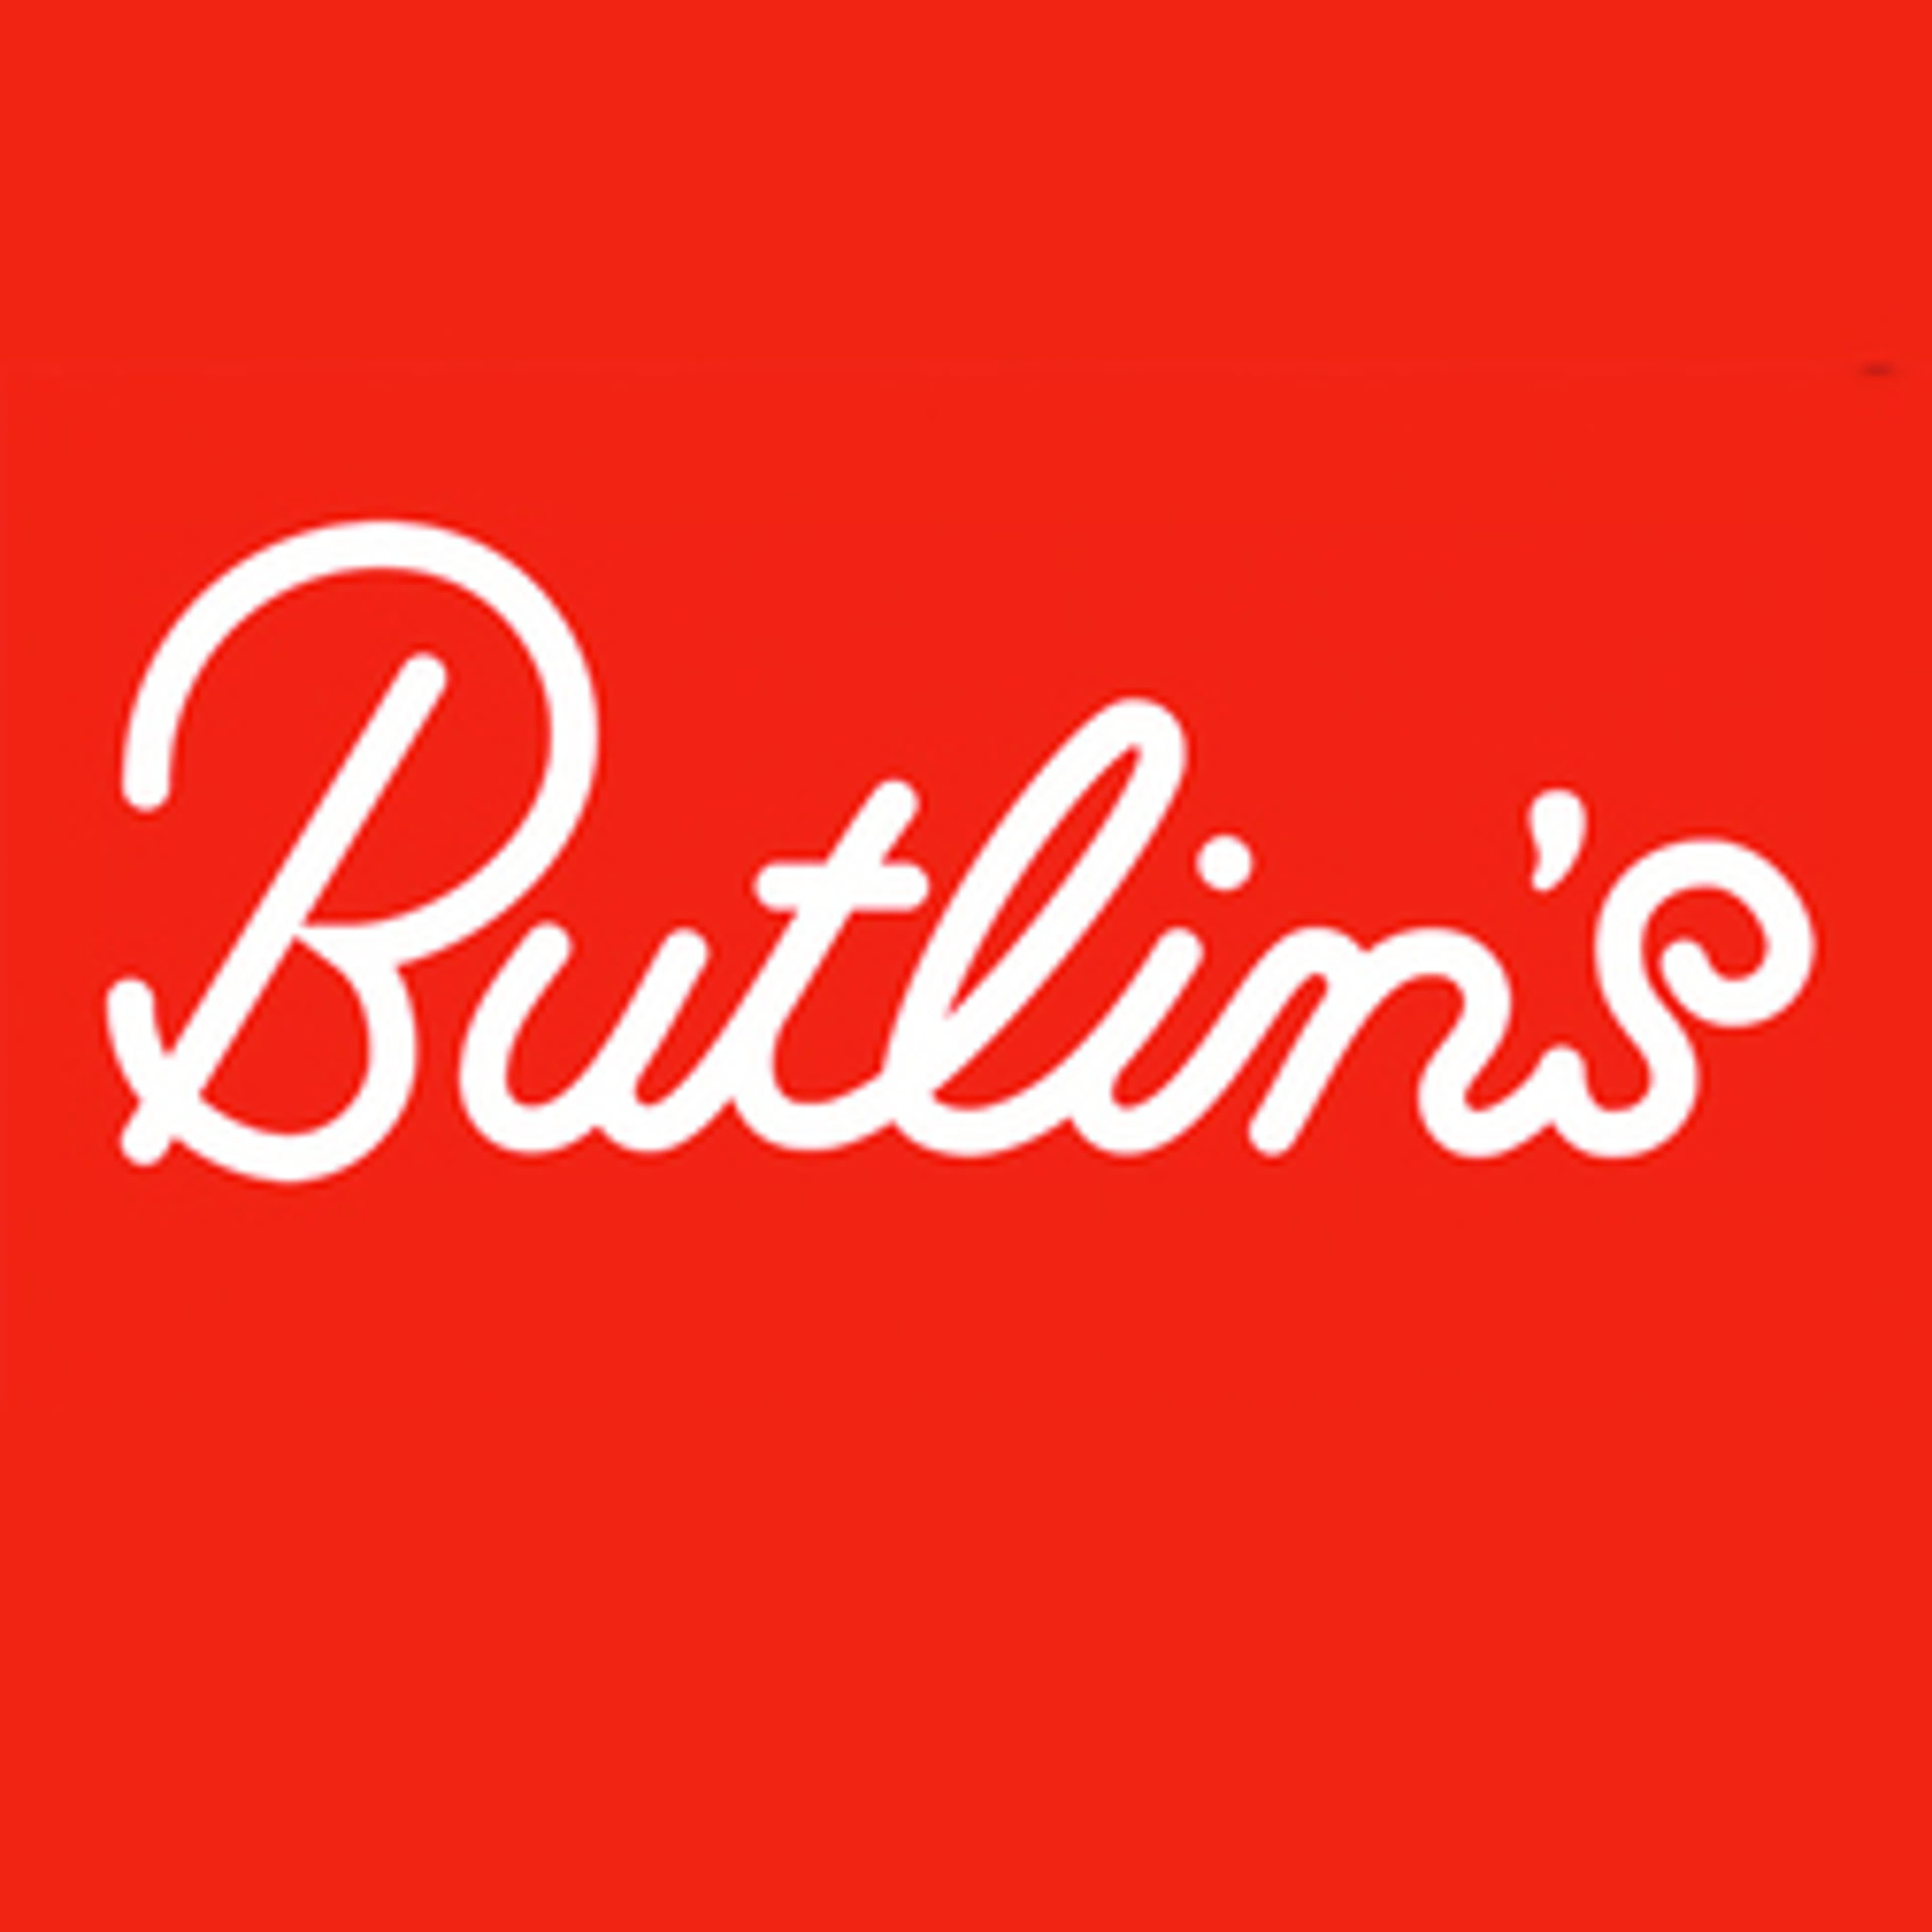  Butlins 